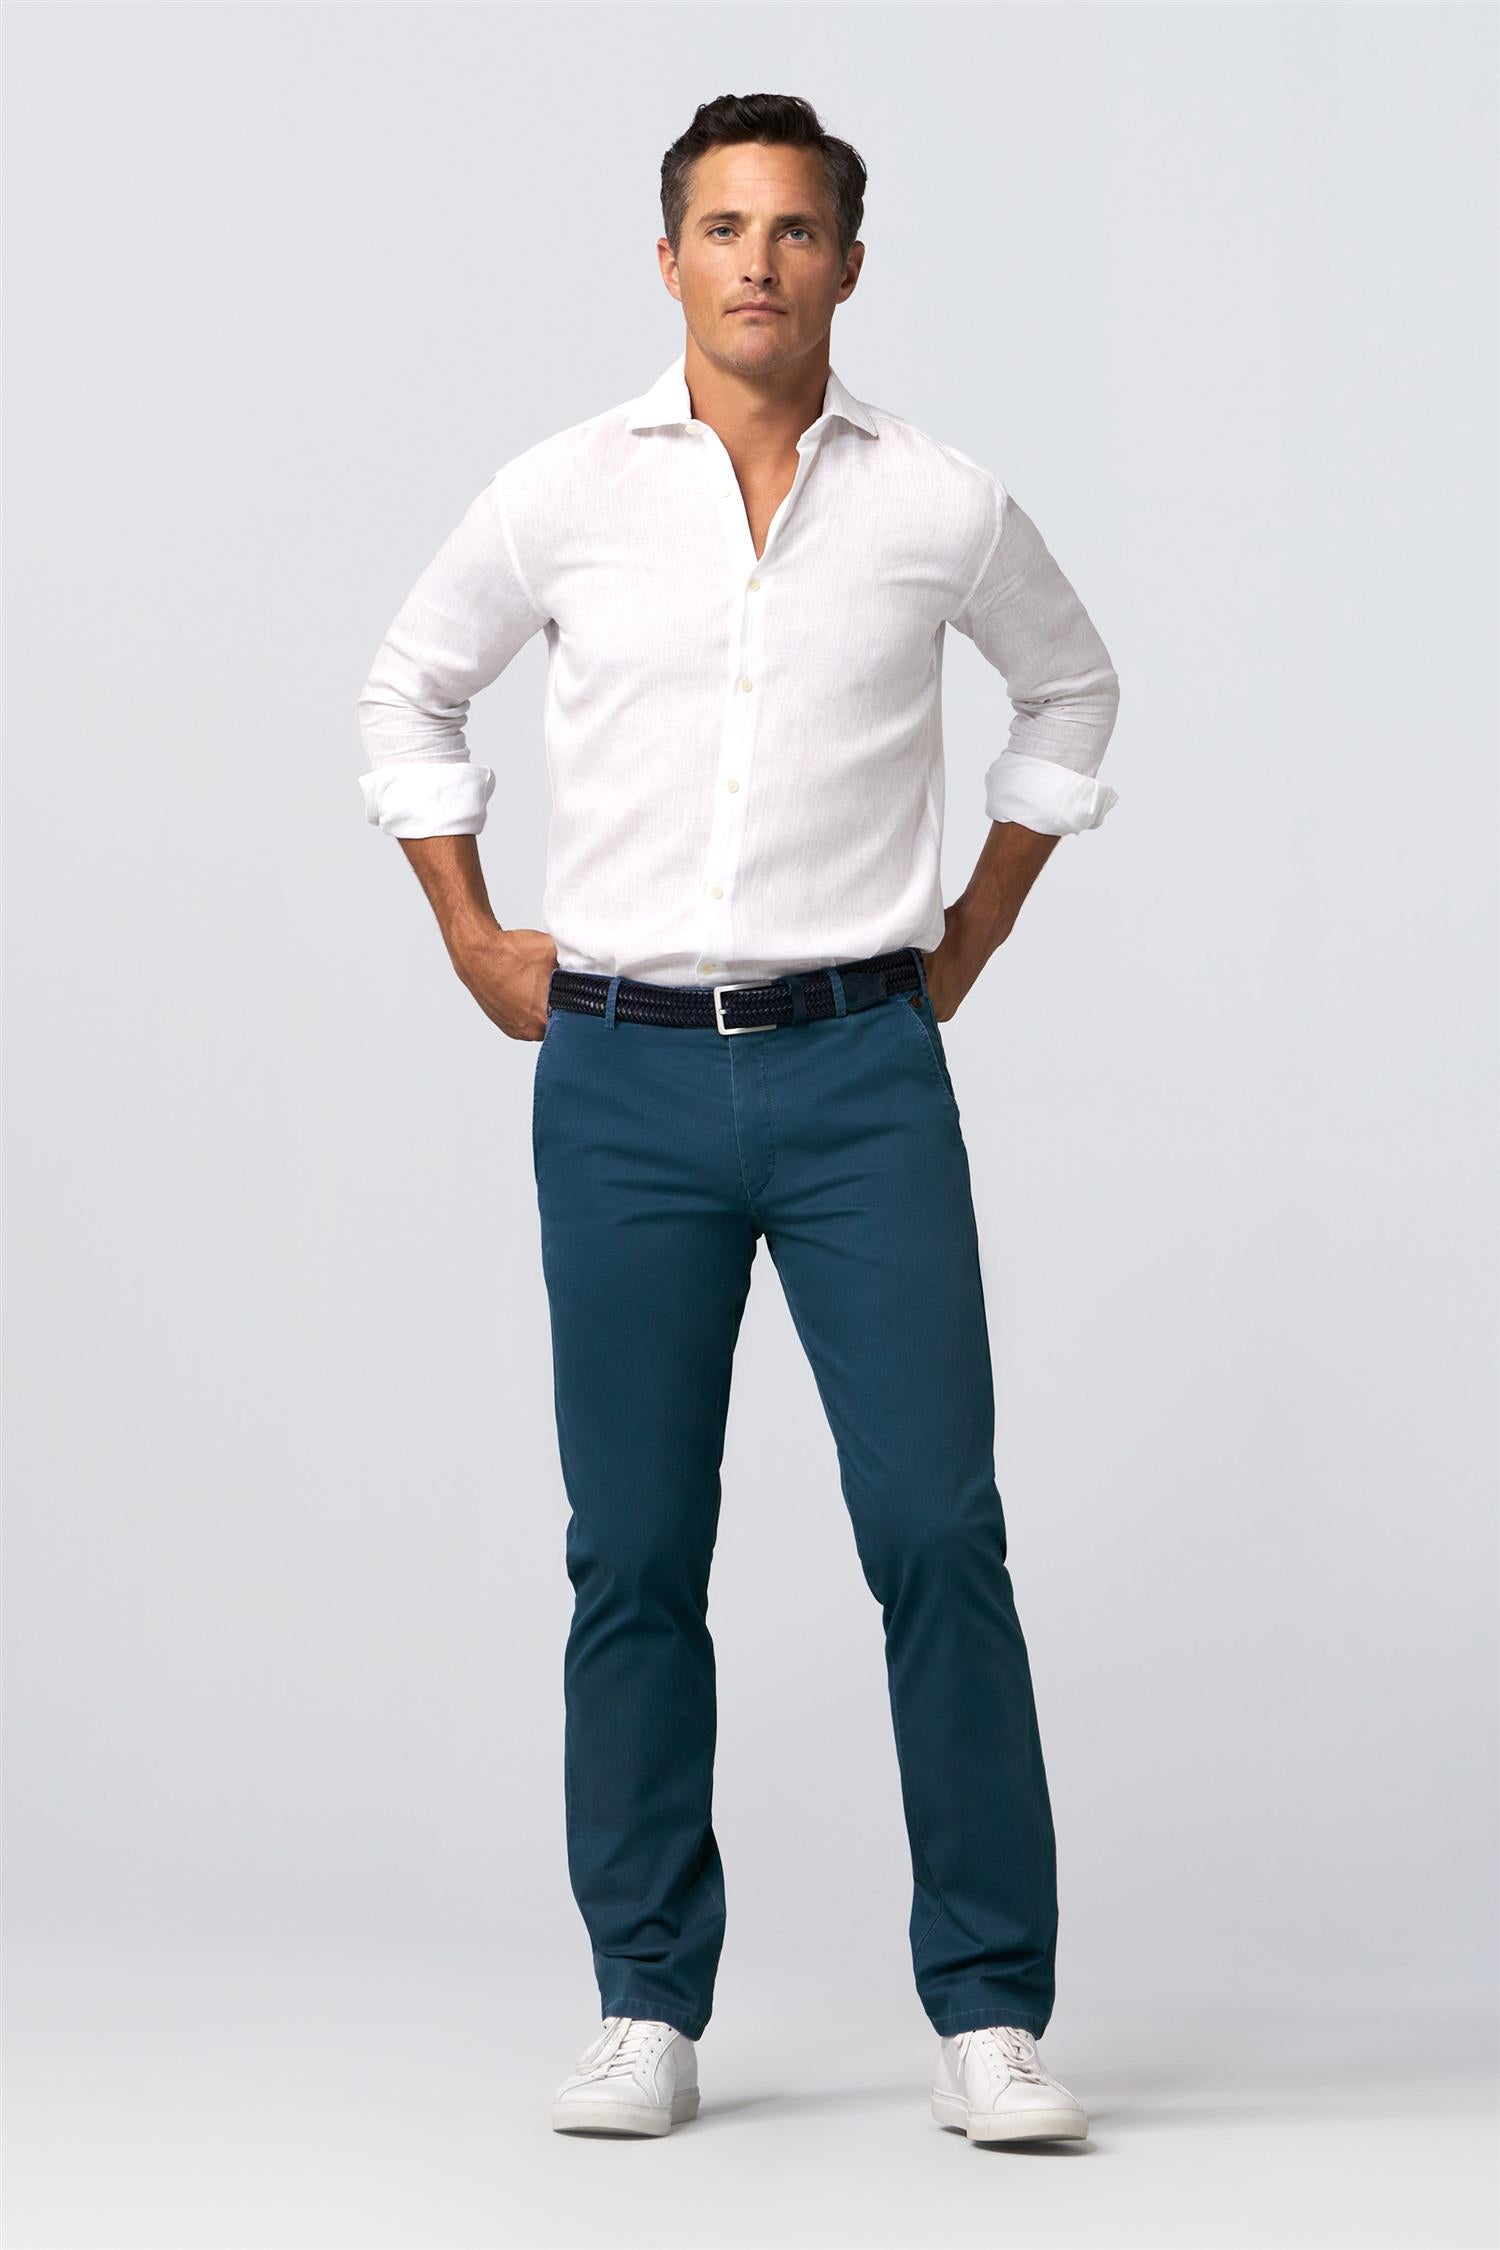 Meyer bukse Mellomblå med hvit skjorte og hvite sko på herremodell